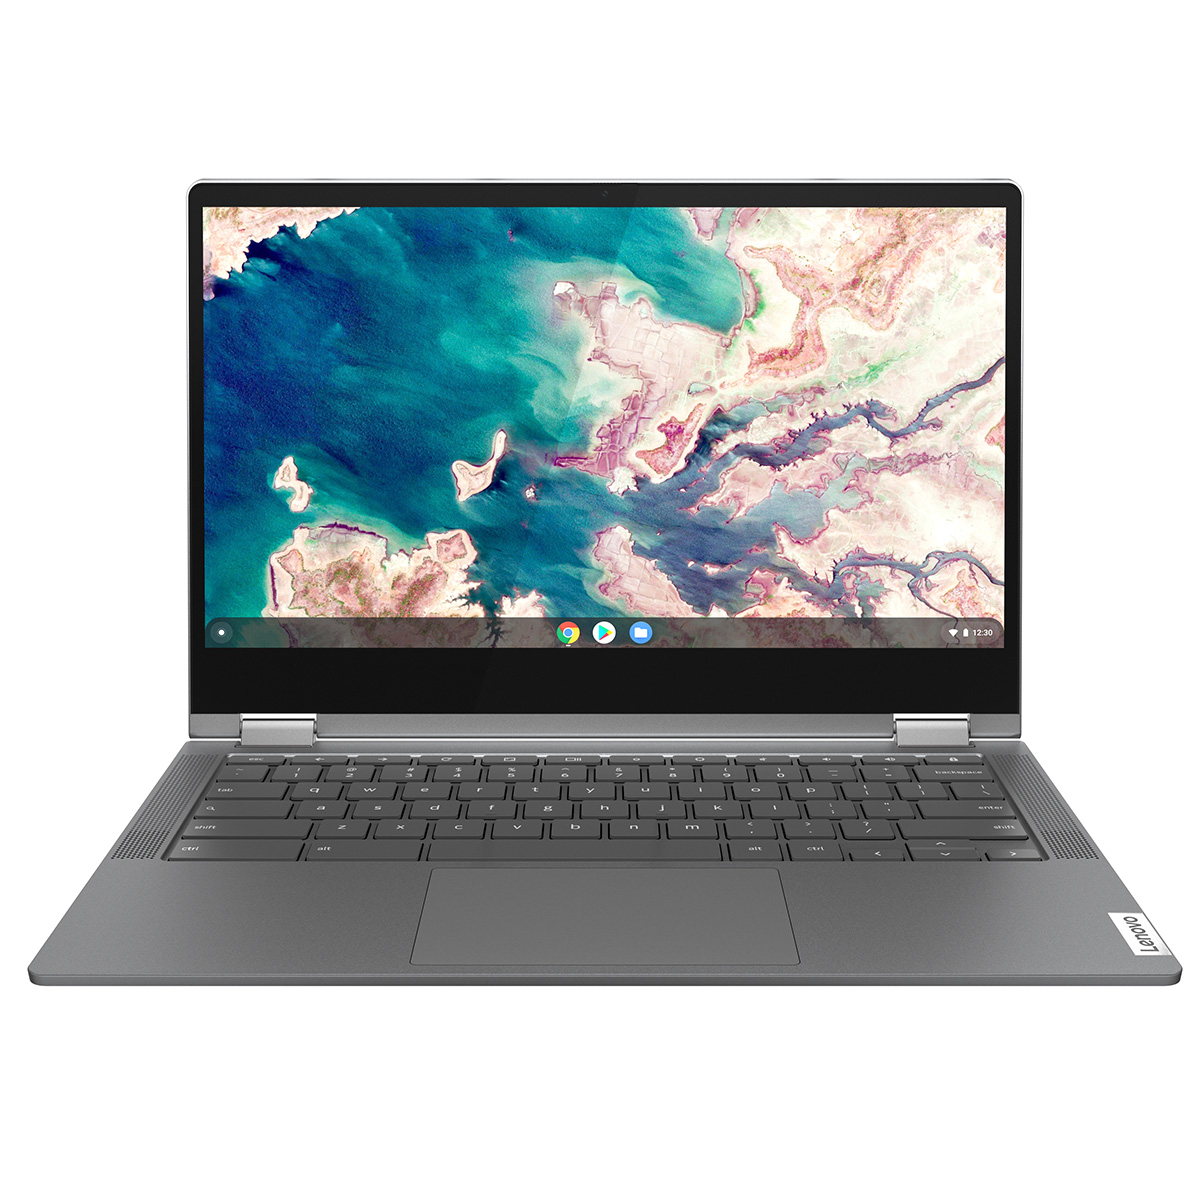 Lenovo　29,800円 ノートPC IdeaPad Flex550i Chromebook （13.3/ 5205U/ 4GB/ 64GB/ Chrome OS/ グラファイトグレー） 82B80018FP 【ひかりTVショッピング】 など 他商品も掲載の場合あり